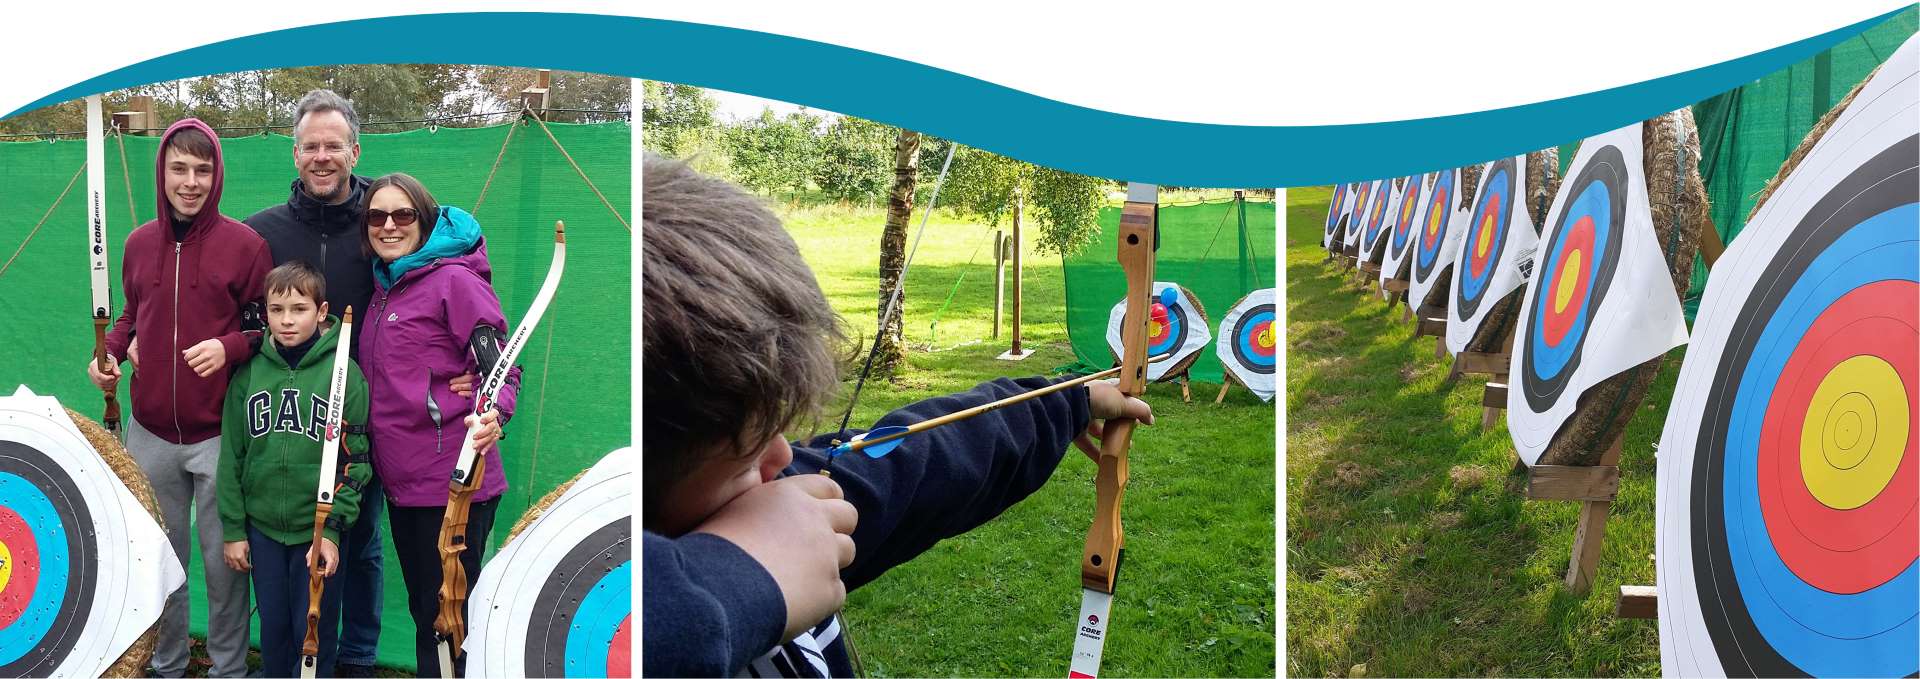 Archery Classes in Cumbria